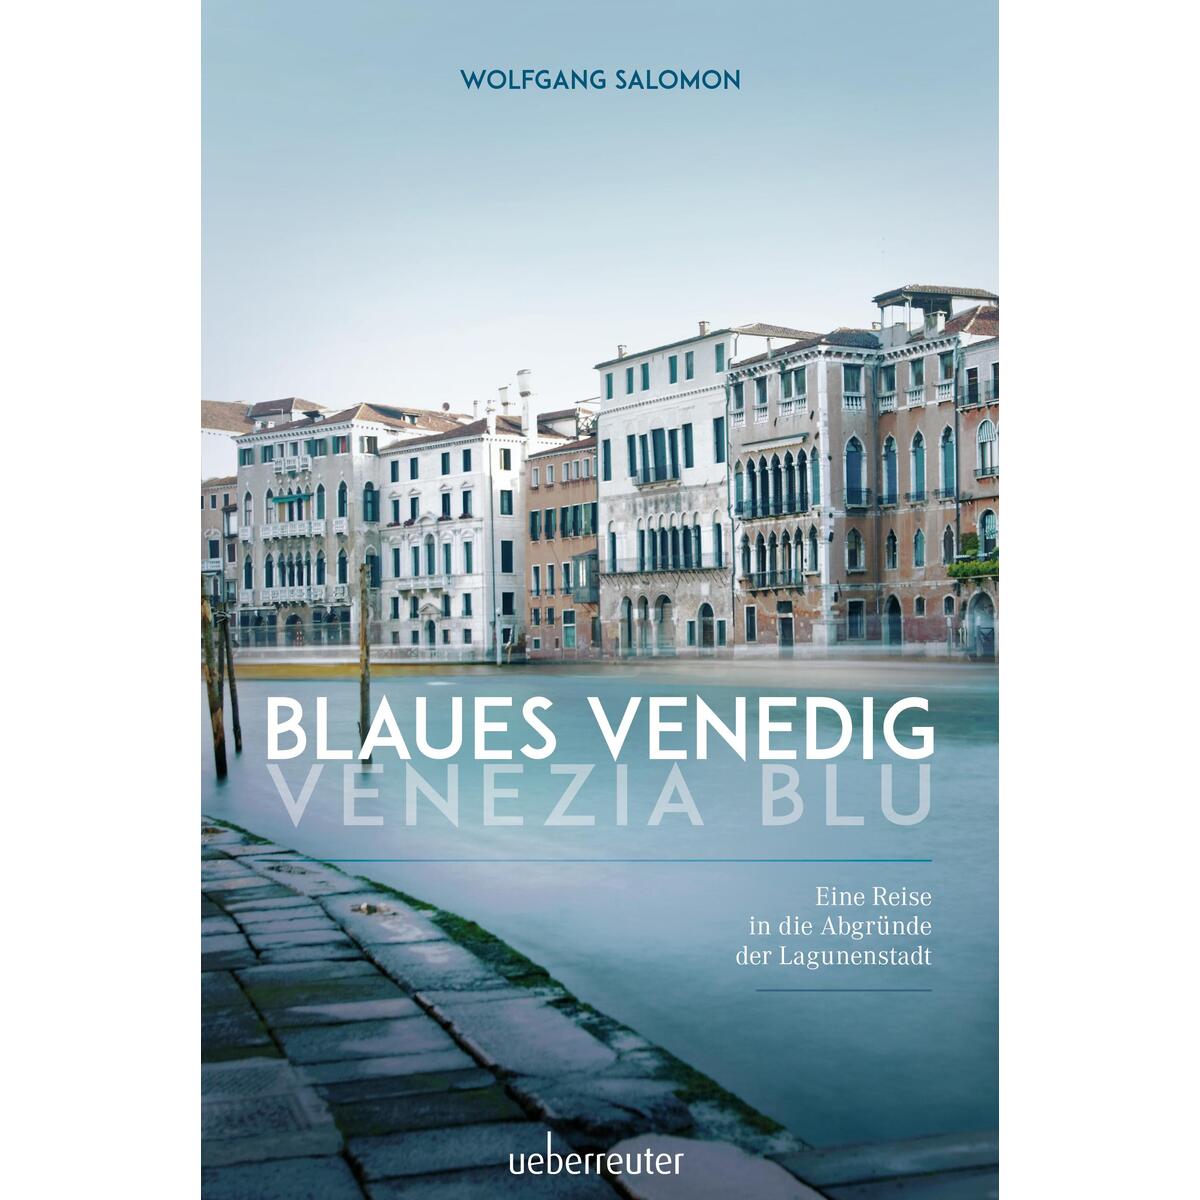 Blaues Venedig - Venezia blu von Ueberreuter, Carl Verlag